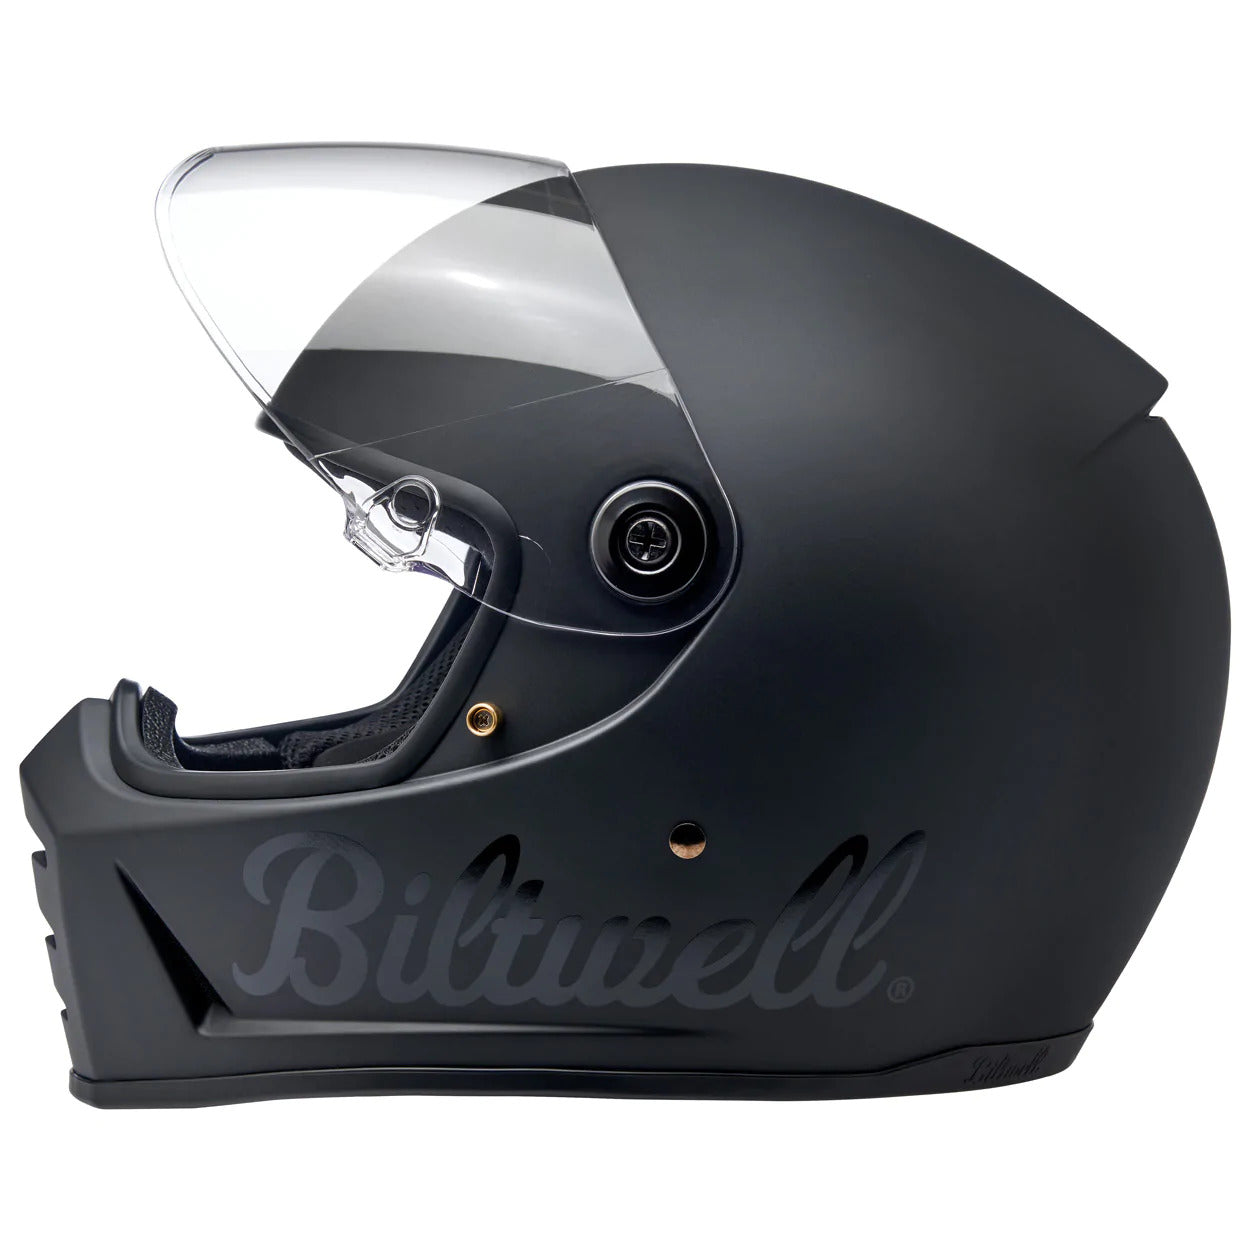 Biltwell Motorcycle Helmet